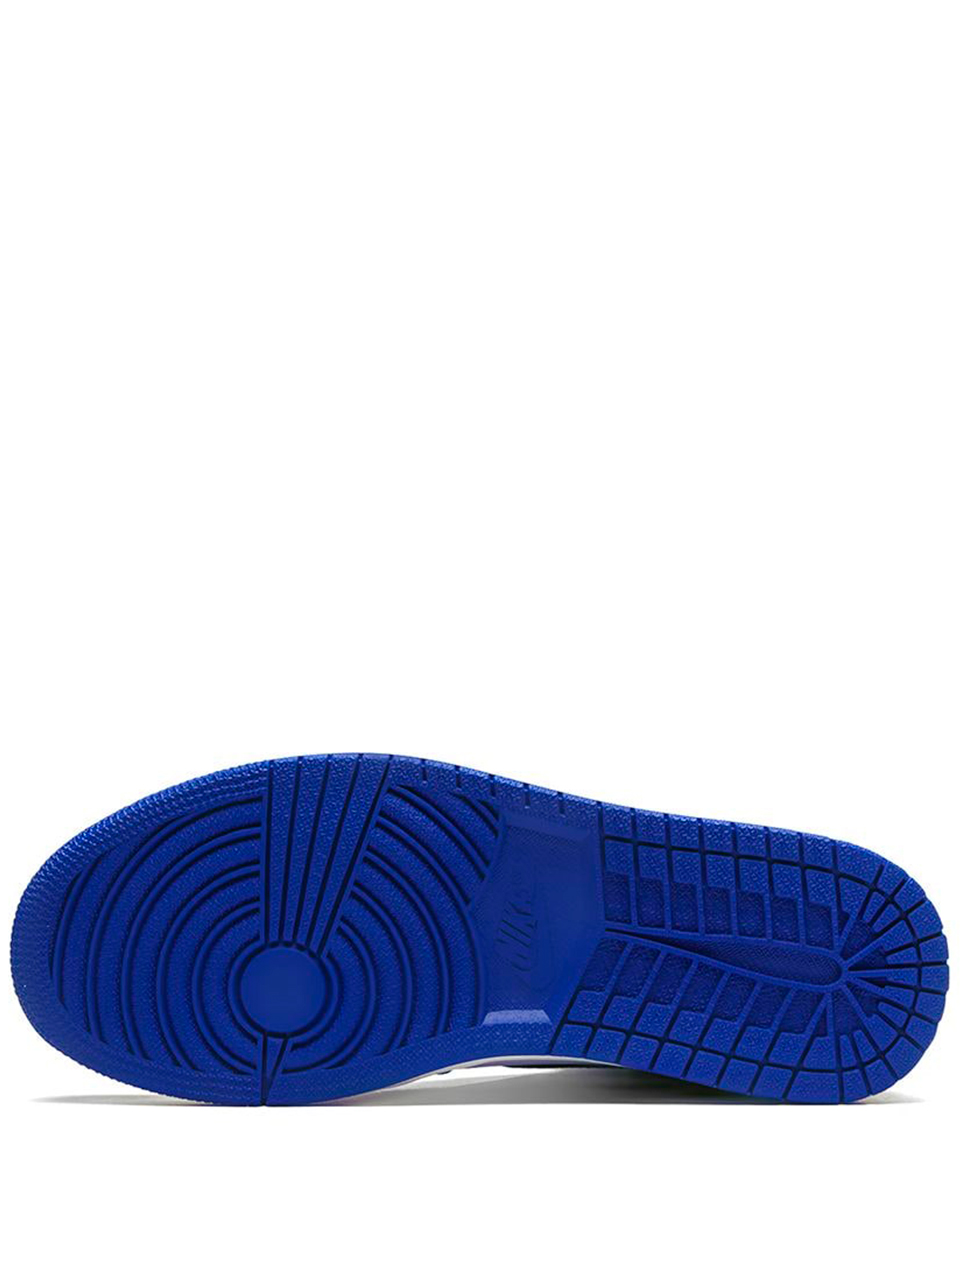 Imagem de: Tênis Nike Air Jordan 1 Retro Azul